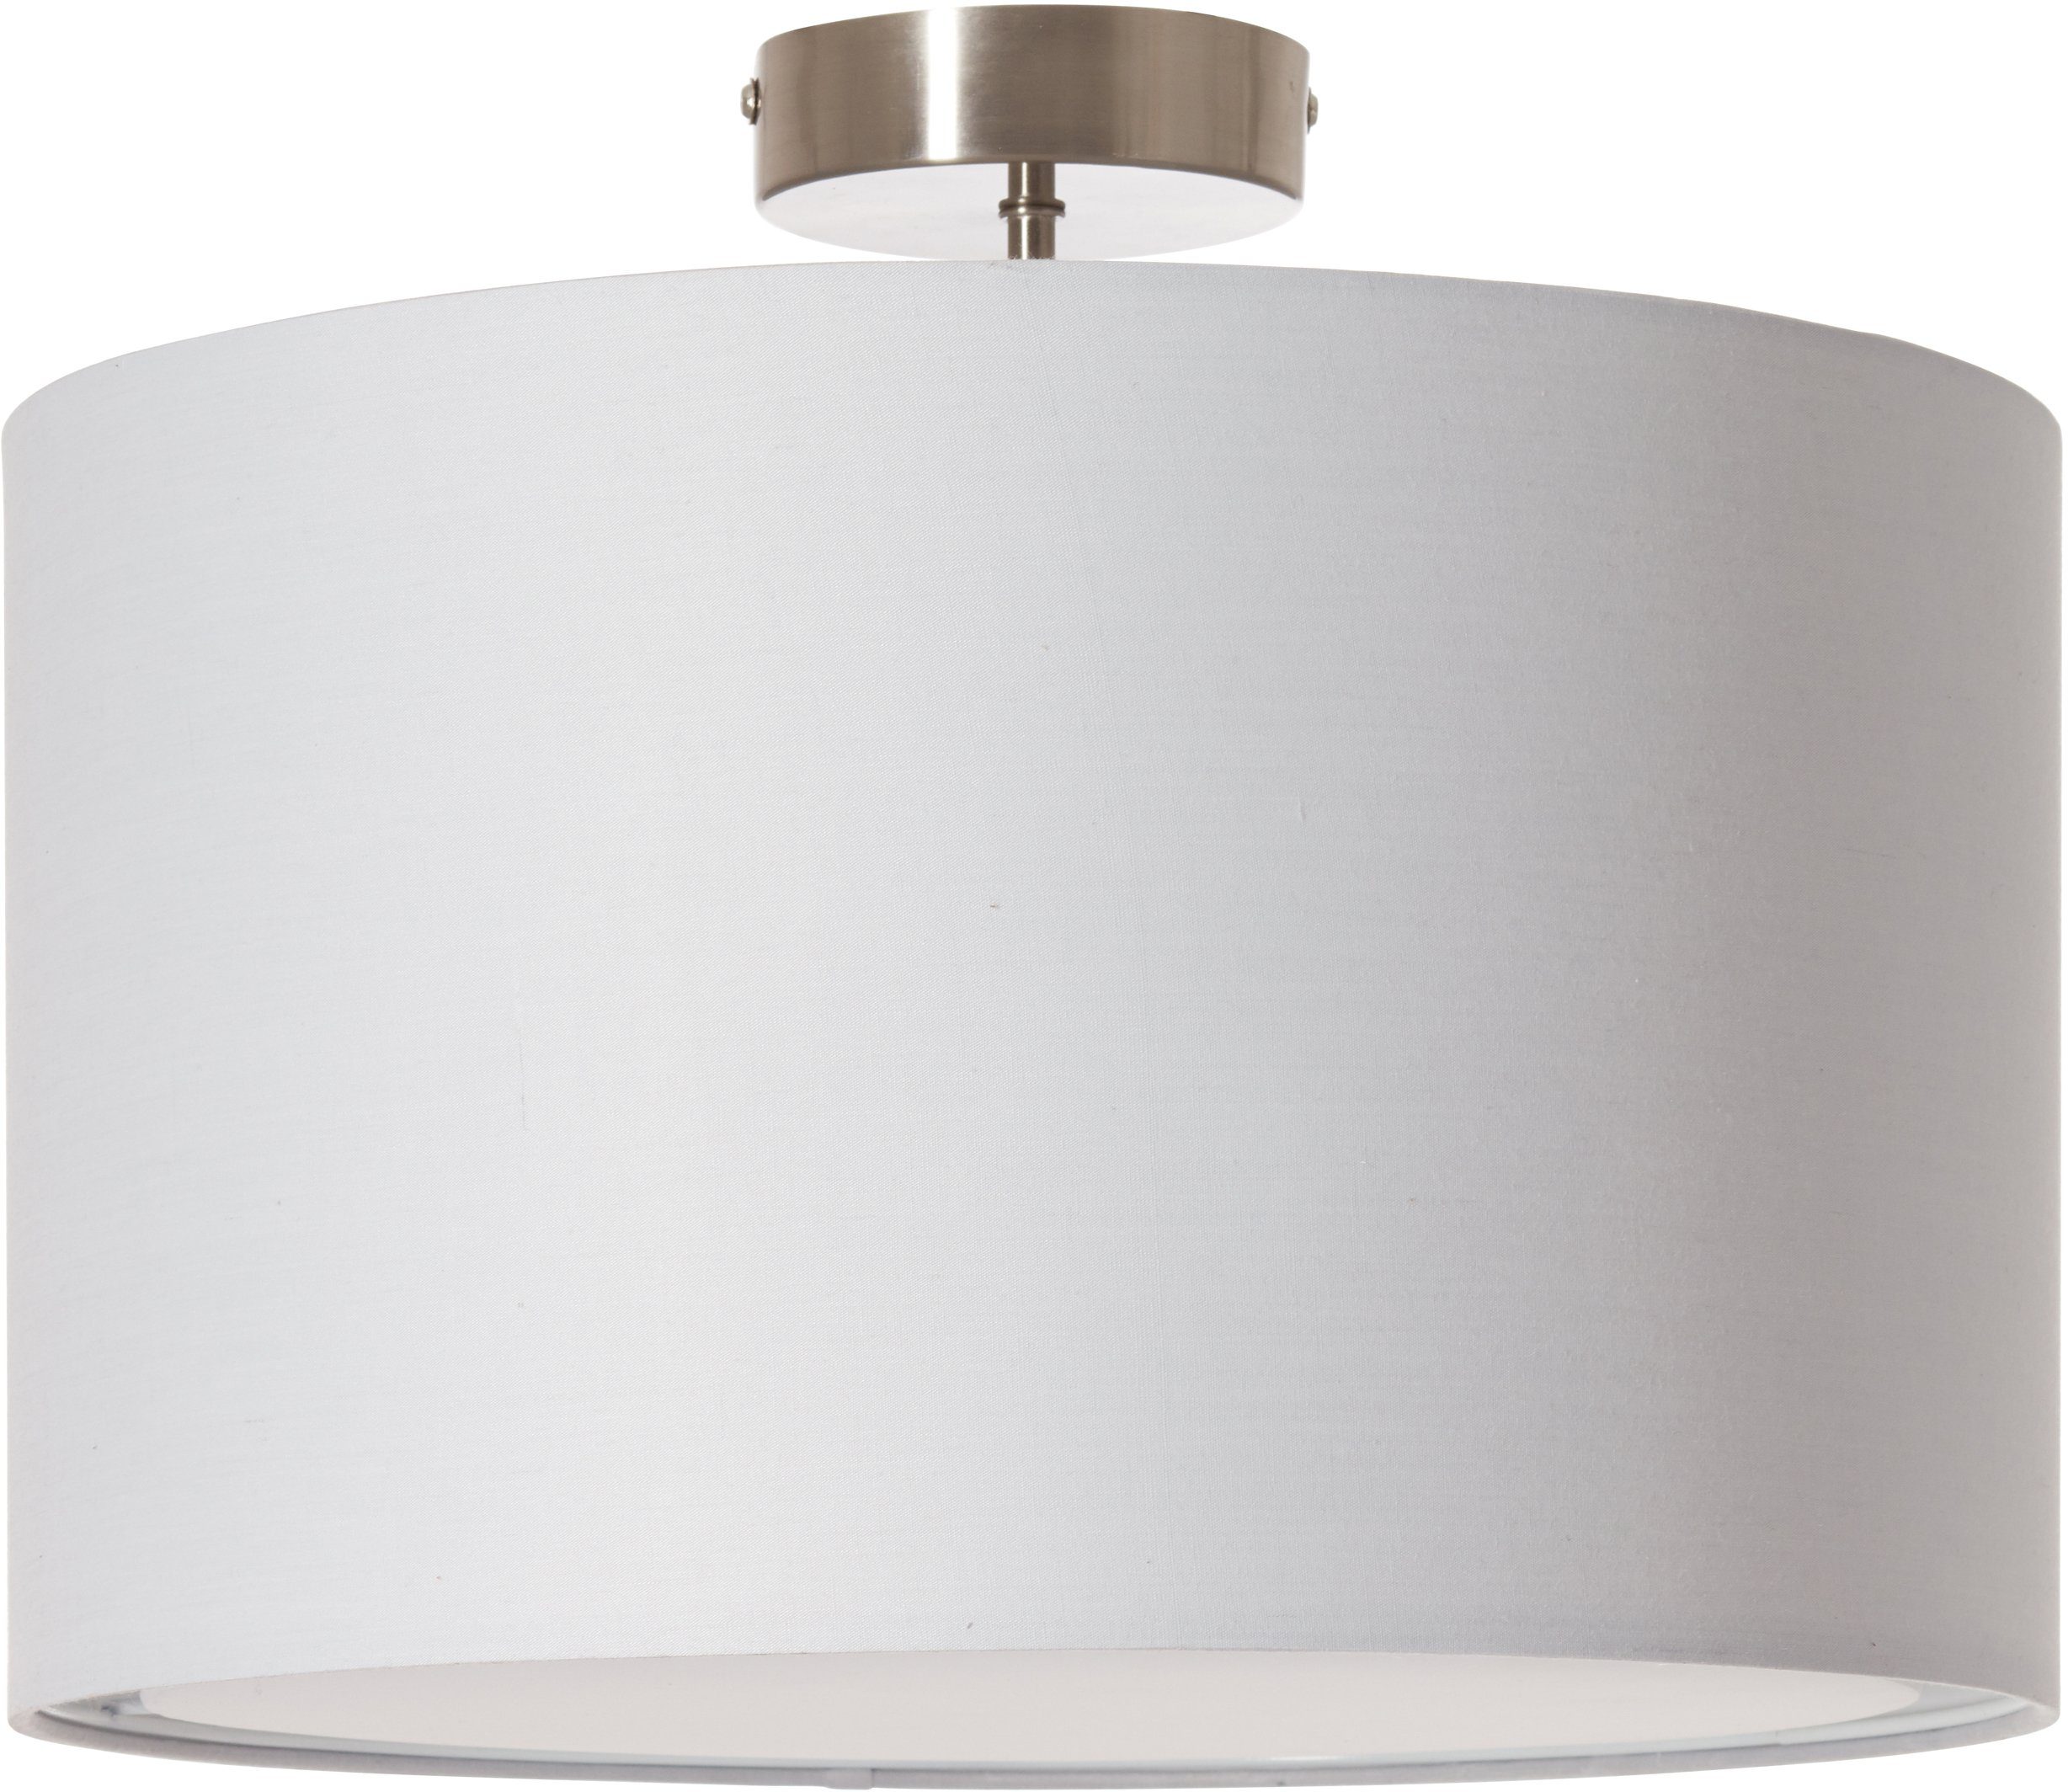 luettenhuett plafondlamp luechte plafondlamp met stof - kap, oe 40 cm, hoogte 32 cm grijs